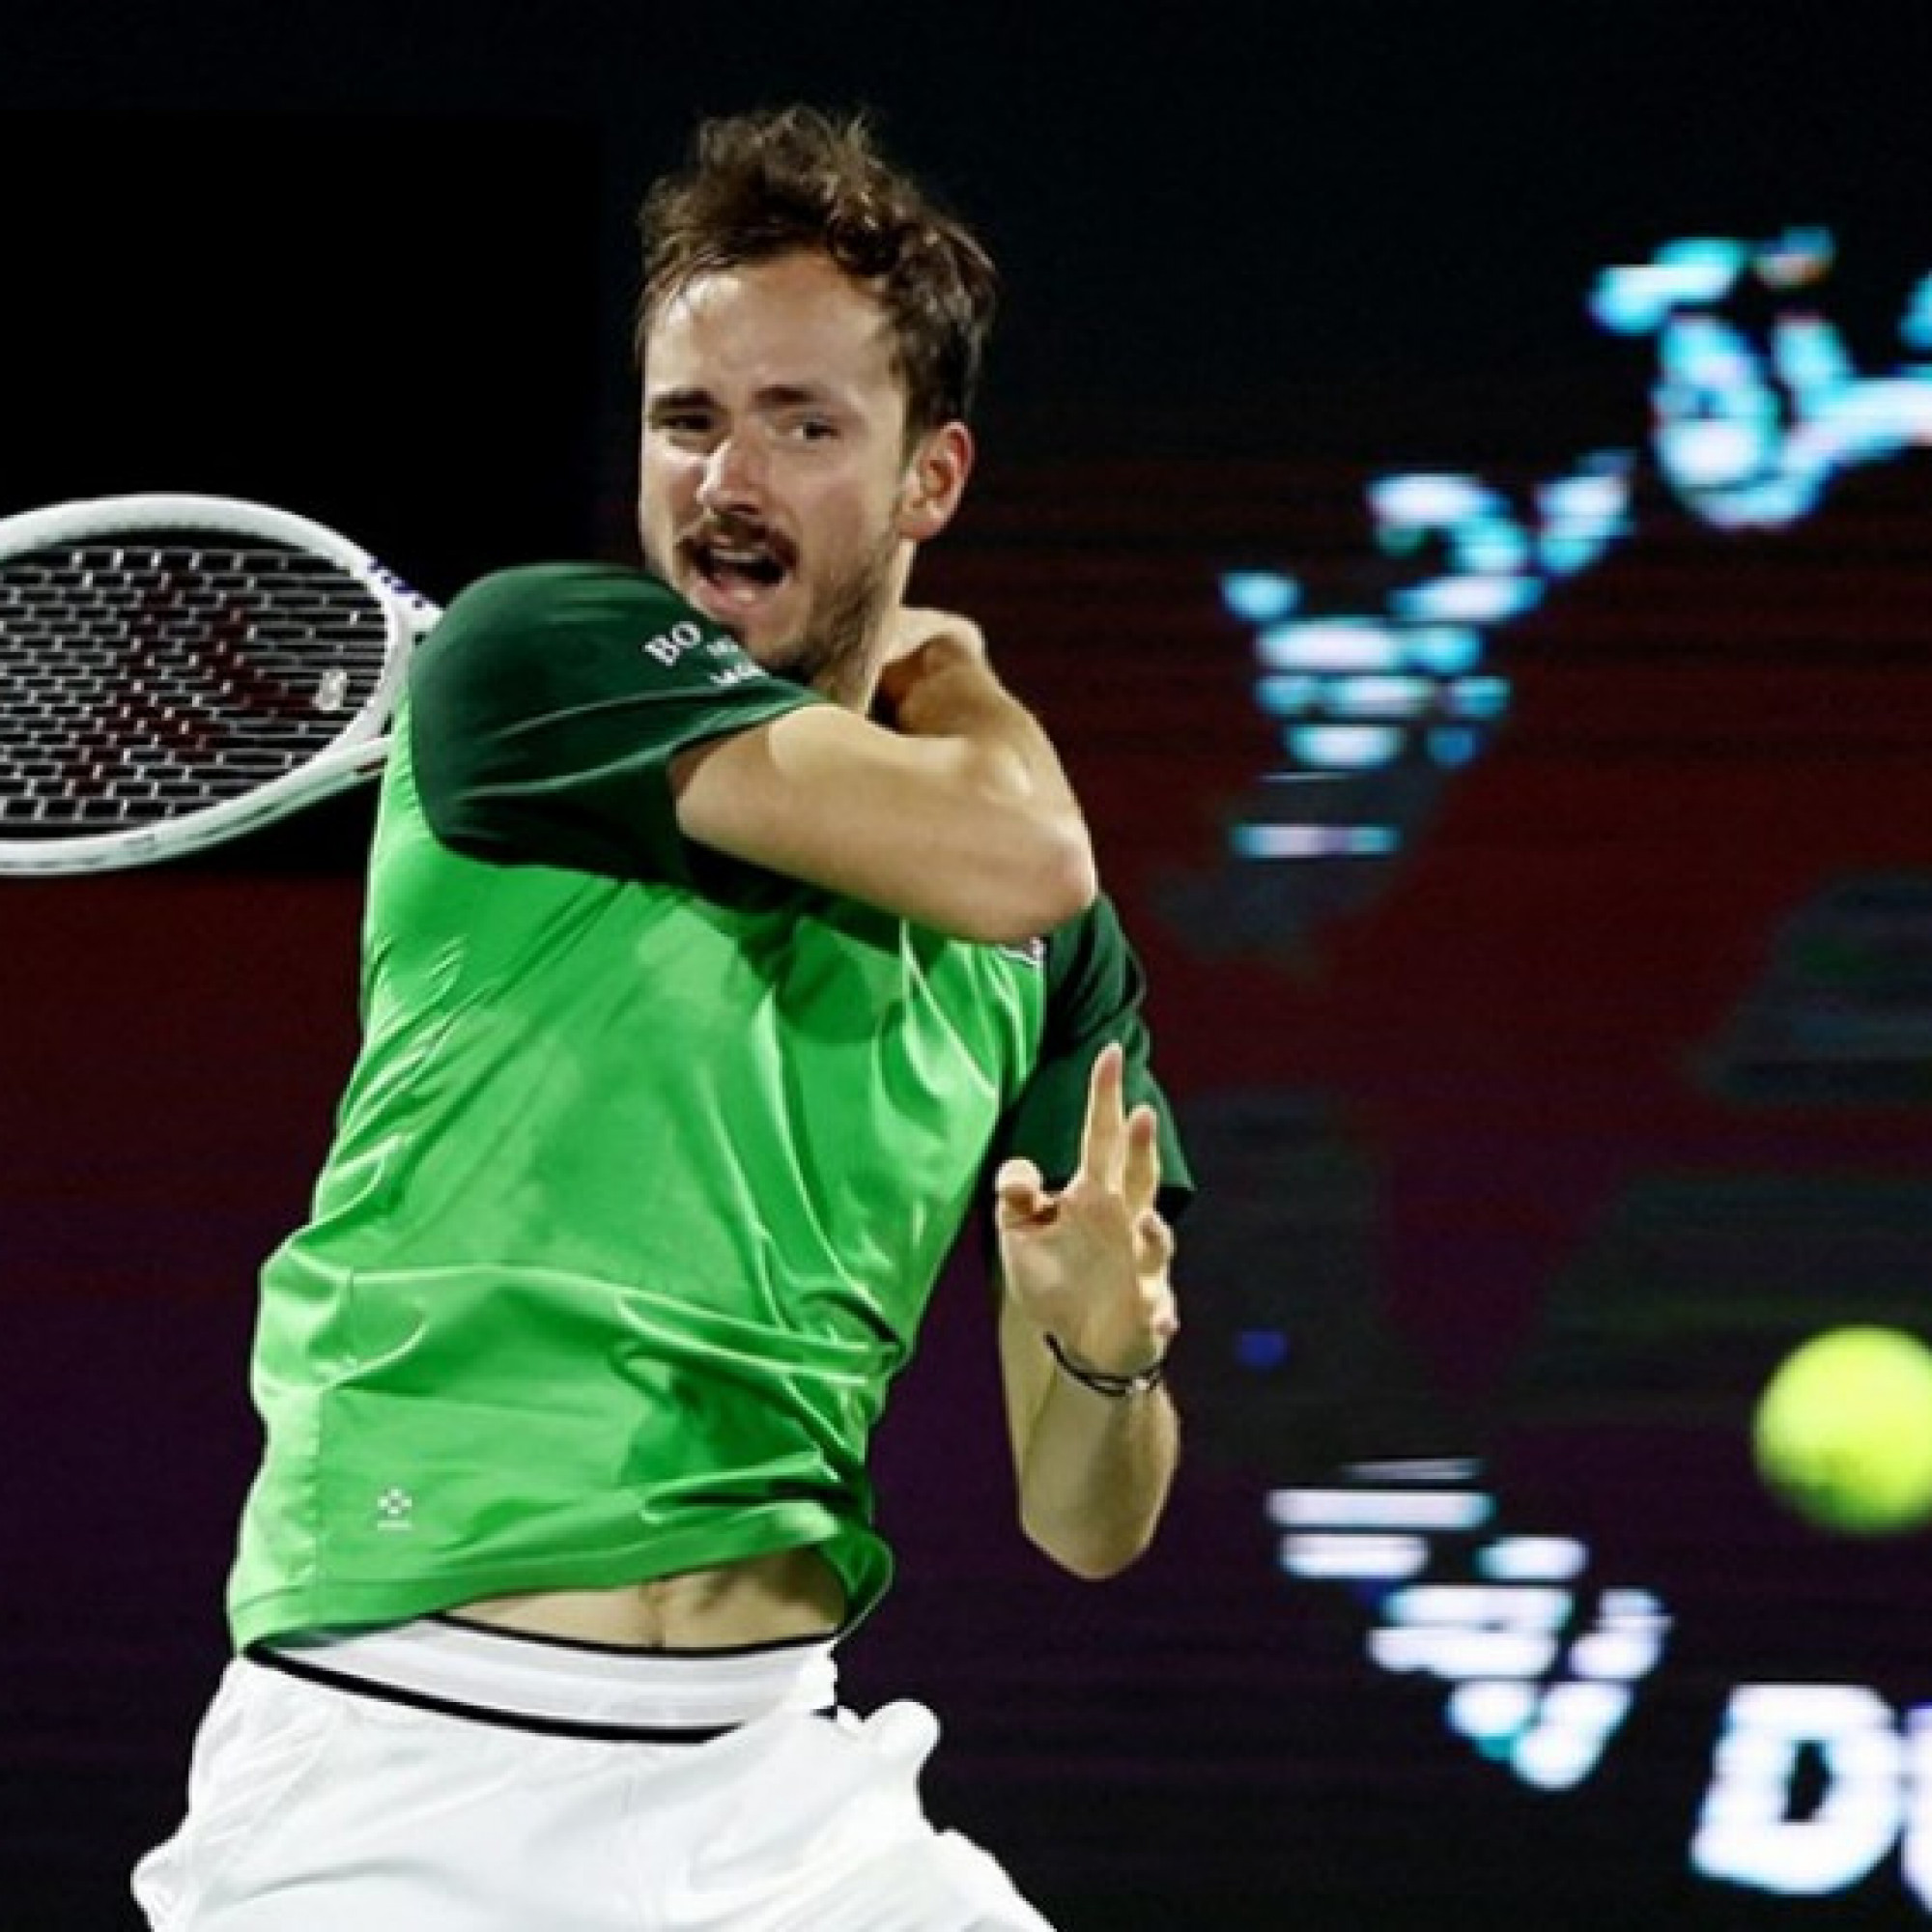  - Trực tiếp các giải tennis: Medvedev & Rublev tranh vé bán kết ở Dubai